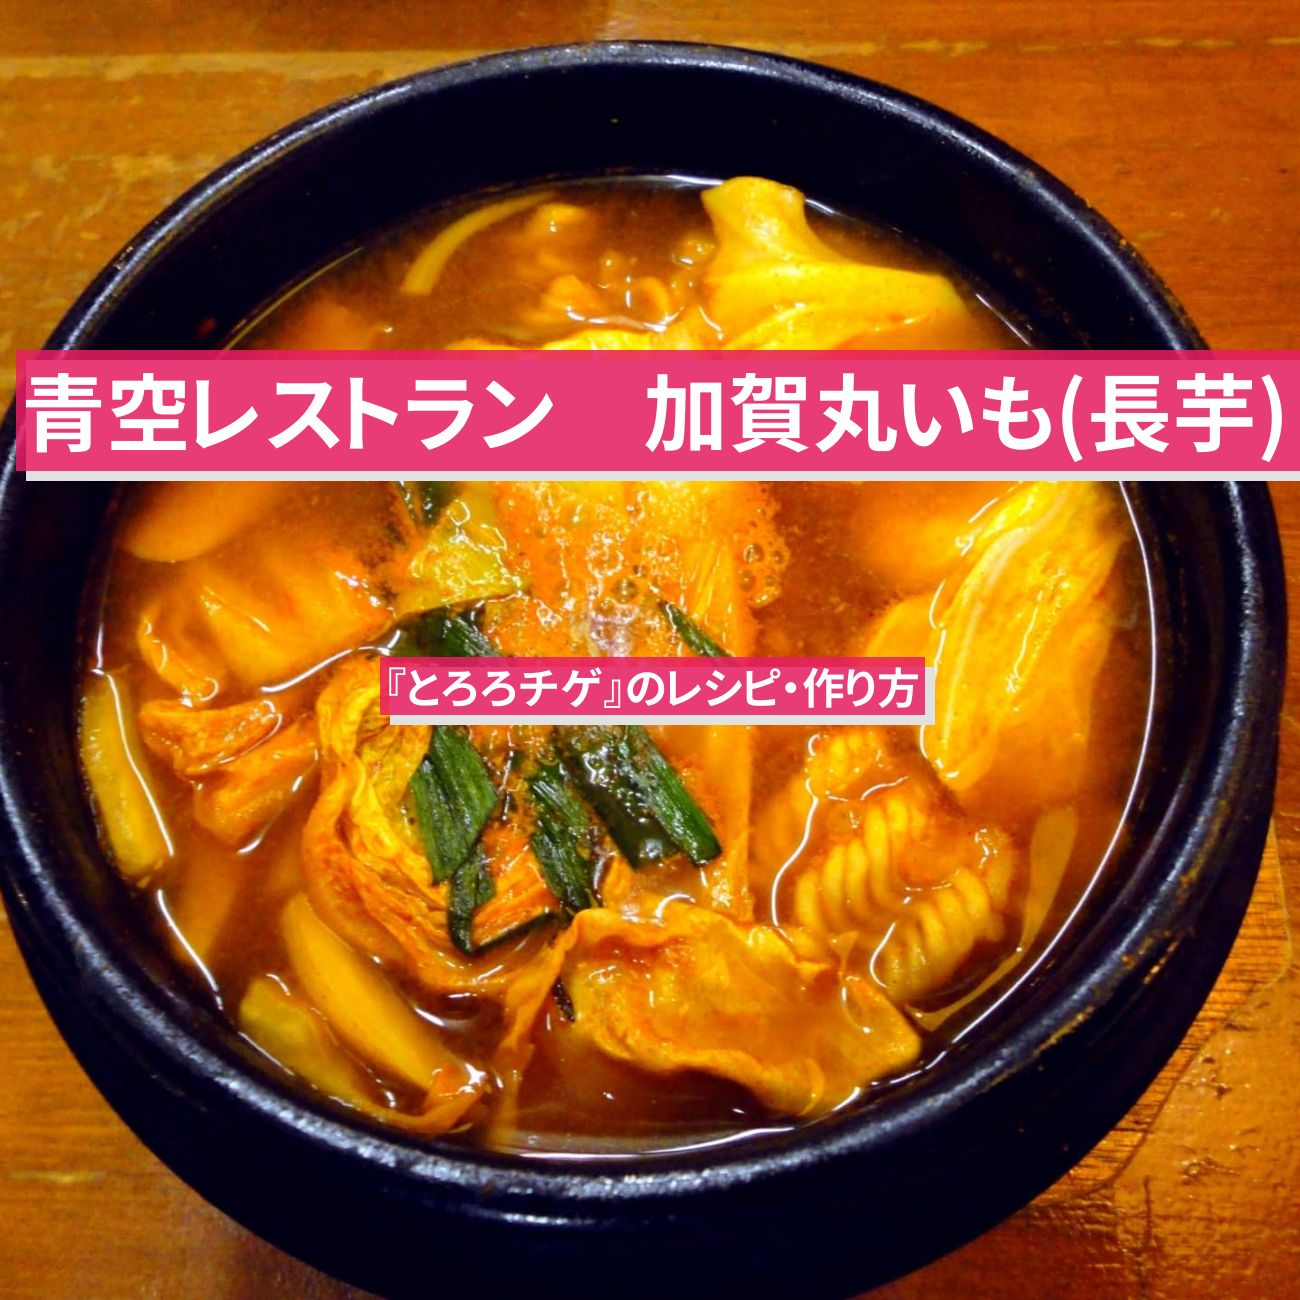 【青空レストラン】加賀丸いも(長芋)で『とろろチゲ』のレシピ・作り方